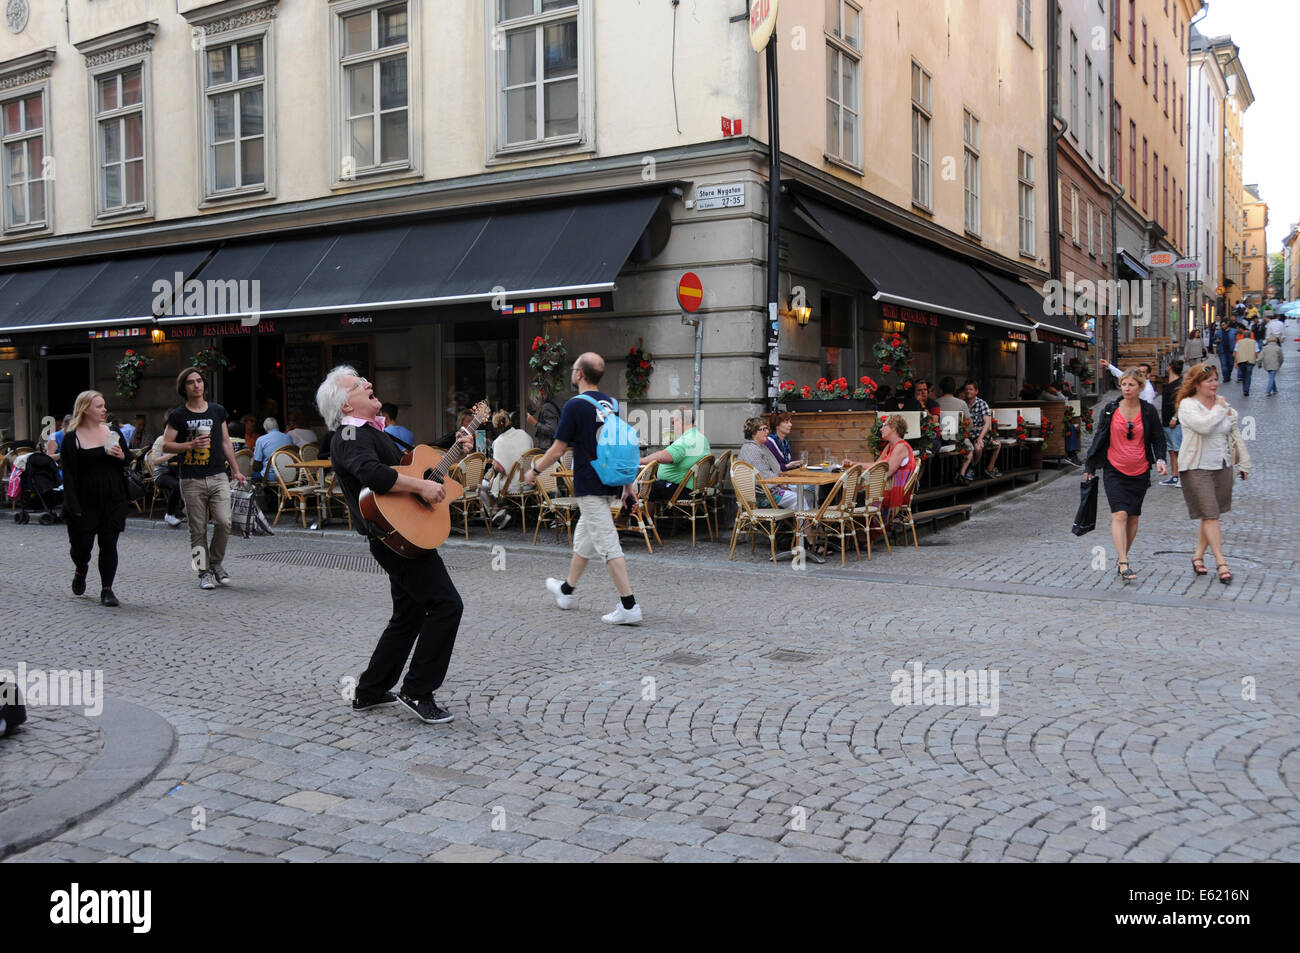 Leben auf der Straße im alten Stockholm mit Bürgersteig Restaurants, Coffee-Shops, Fußgänger und Musikern entlang der gepflasterten Straßen Stockfoto